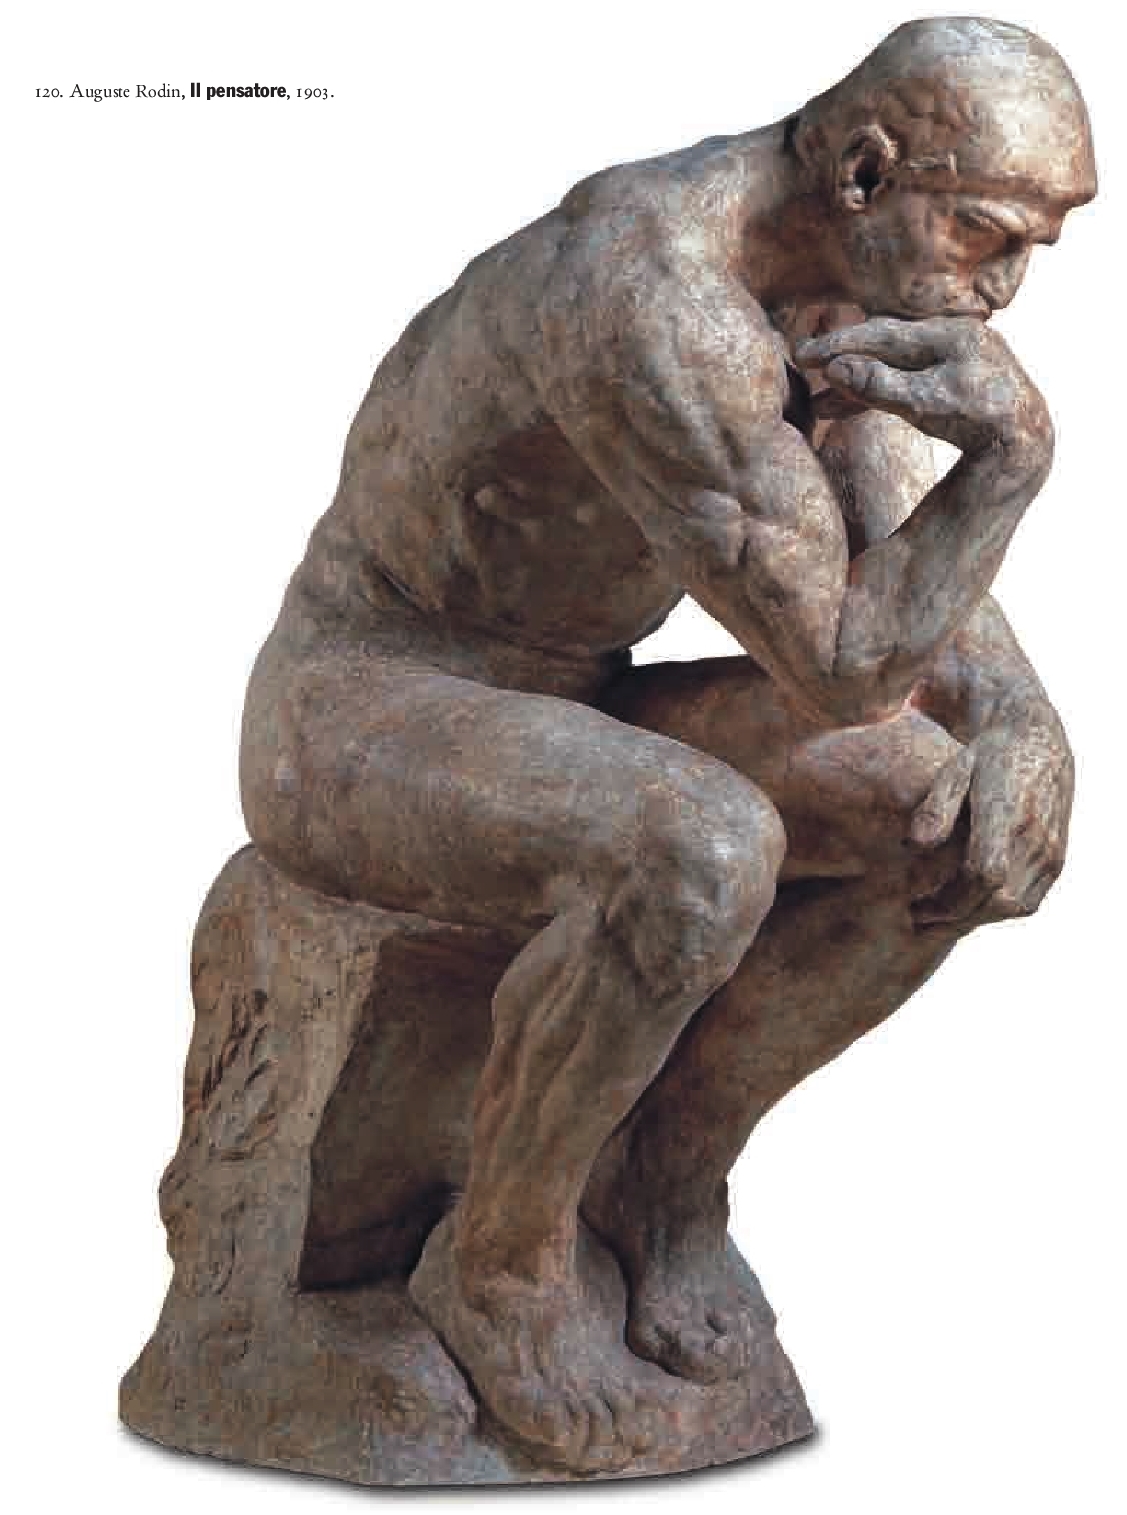 Auguste+Rodin-1840-1917 (24).jpg